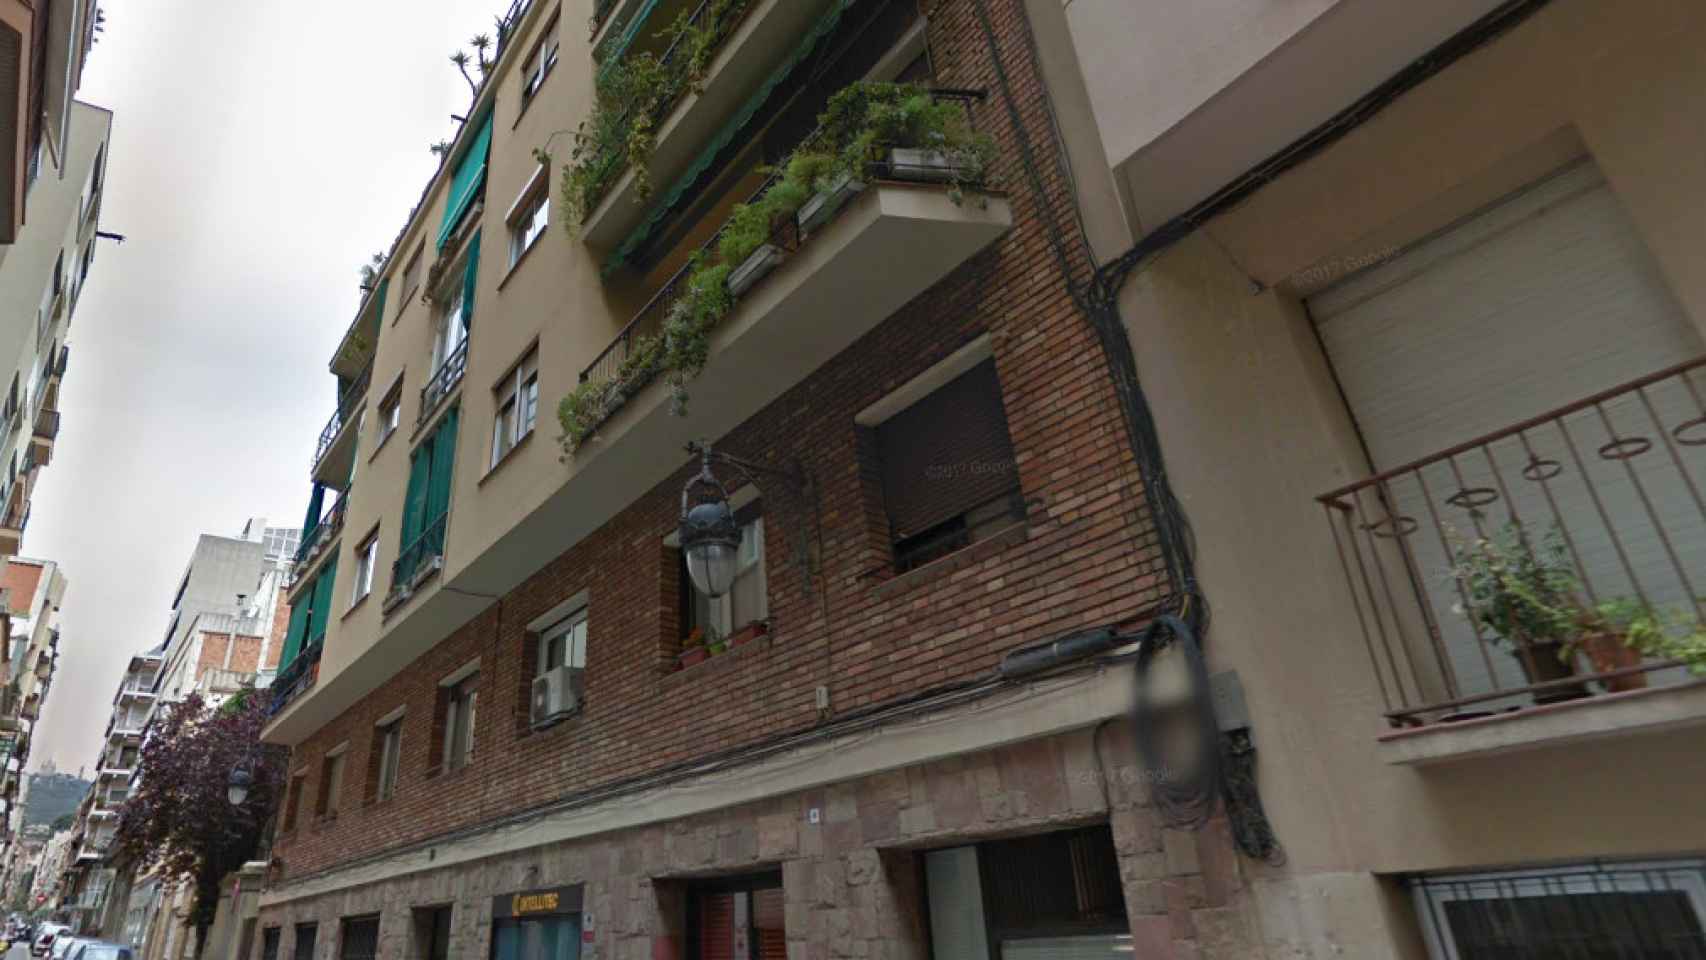 Sede de Intellitec --empresa que quiebras -- en la calle Zaragoza de Barcelona / CG